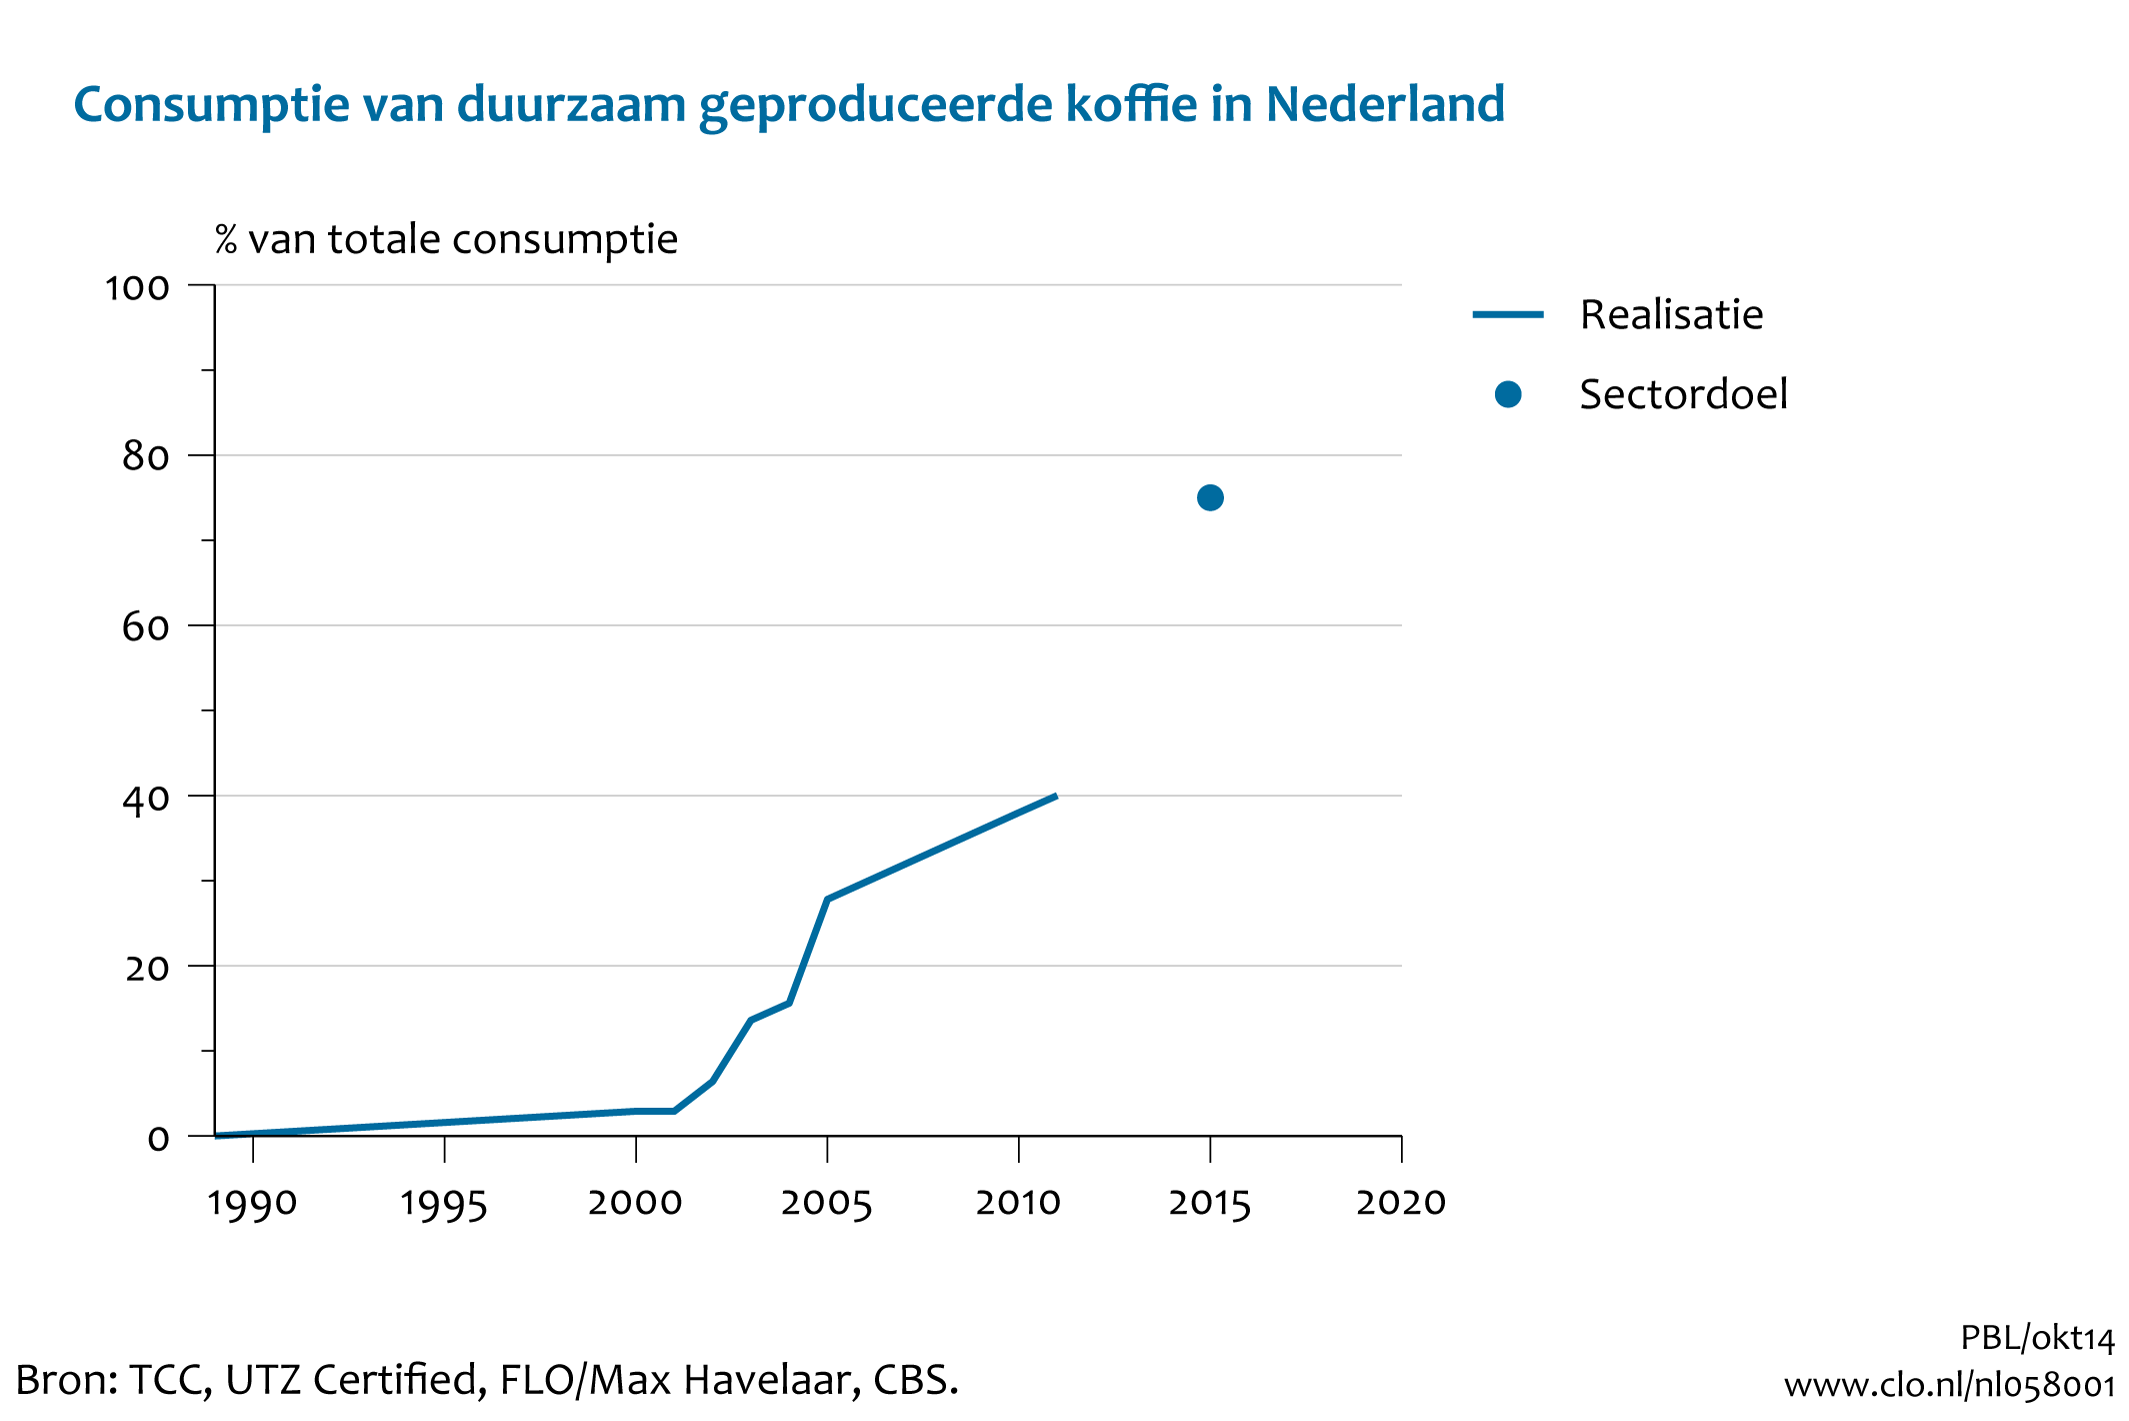 Figuur Marktaandeel van duurzaam geproduceerde koffie in de Nederlandse consumptie. In de rest van de tekst wordt deze figuur uitgebreider uitgelegd.